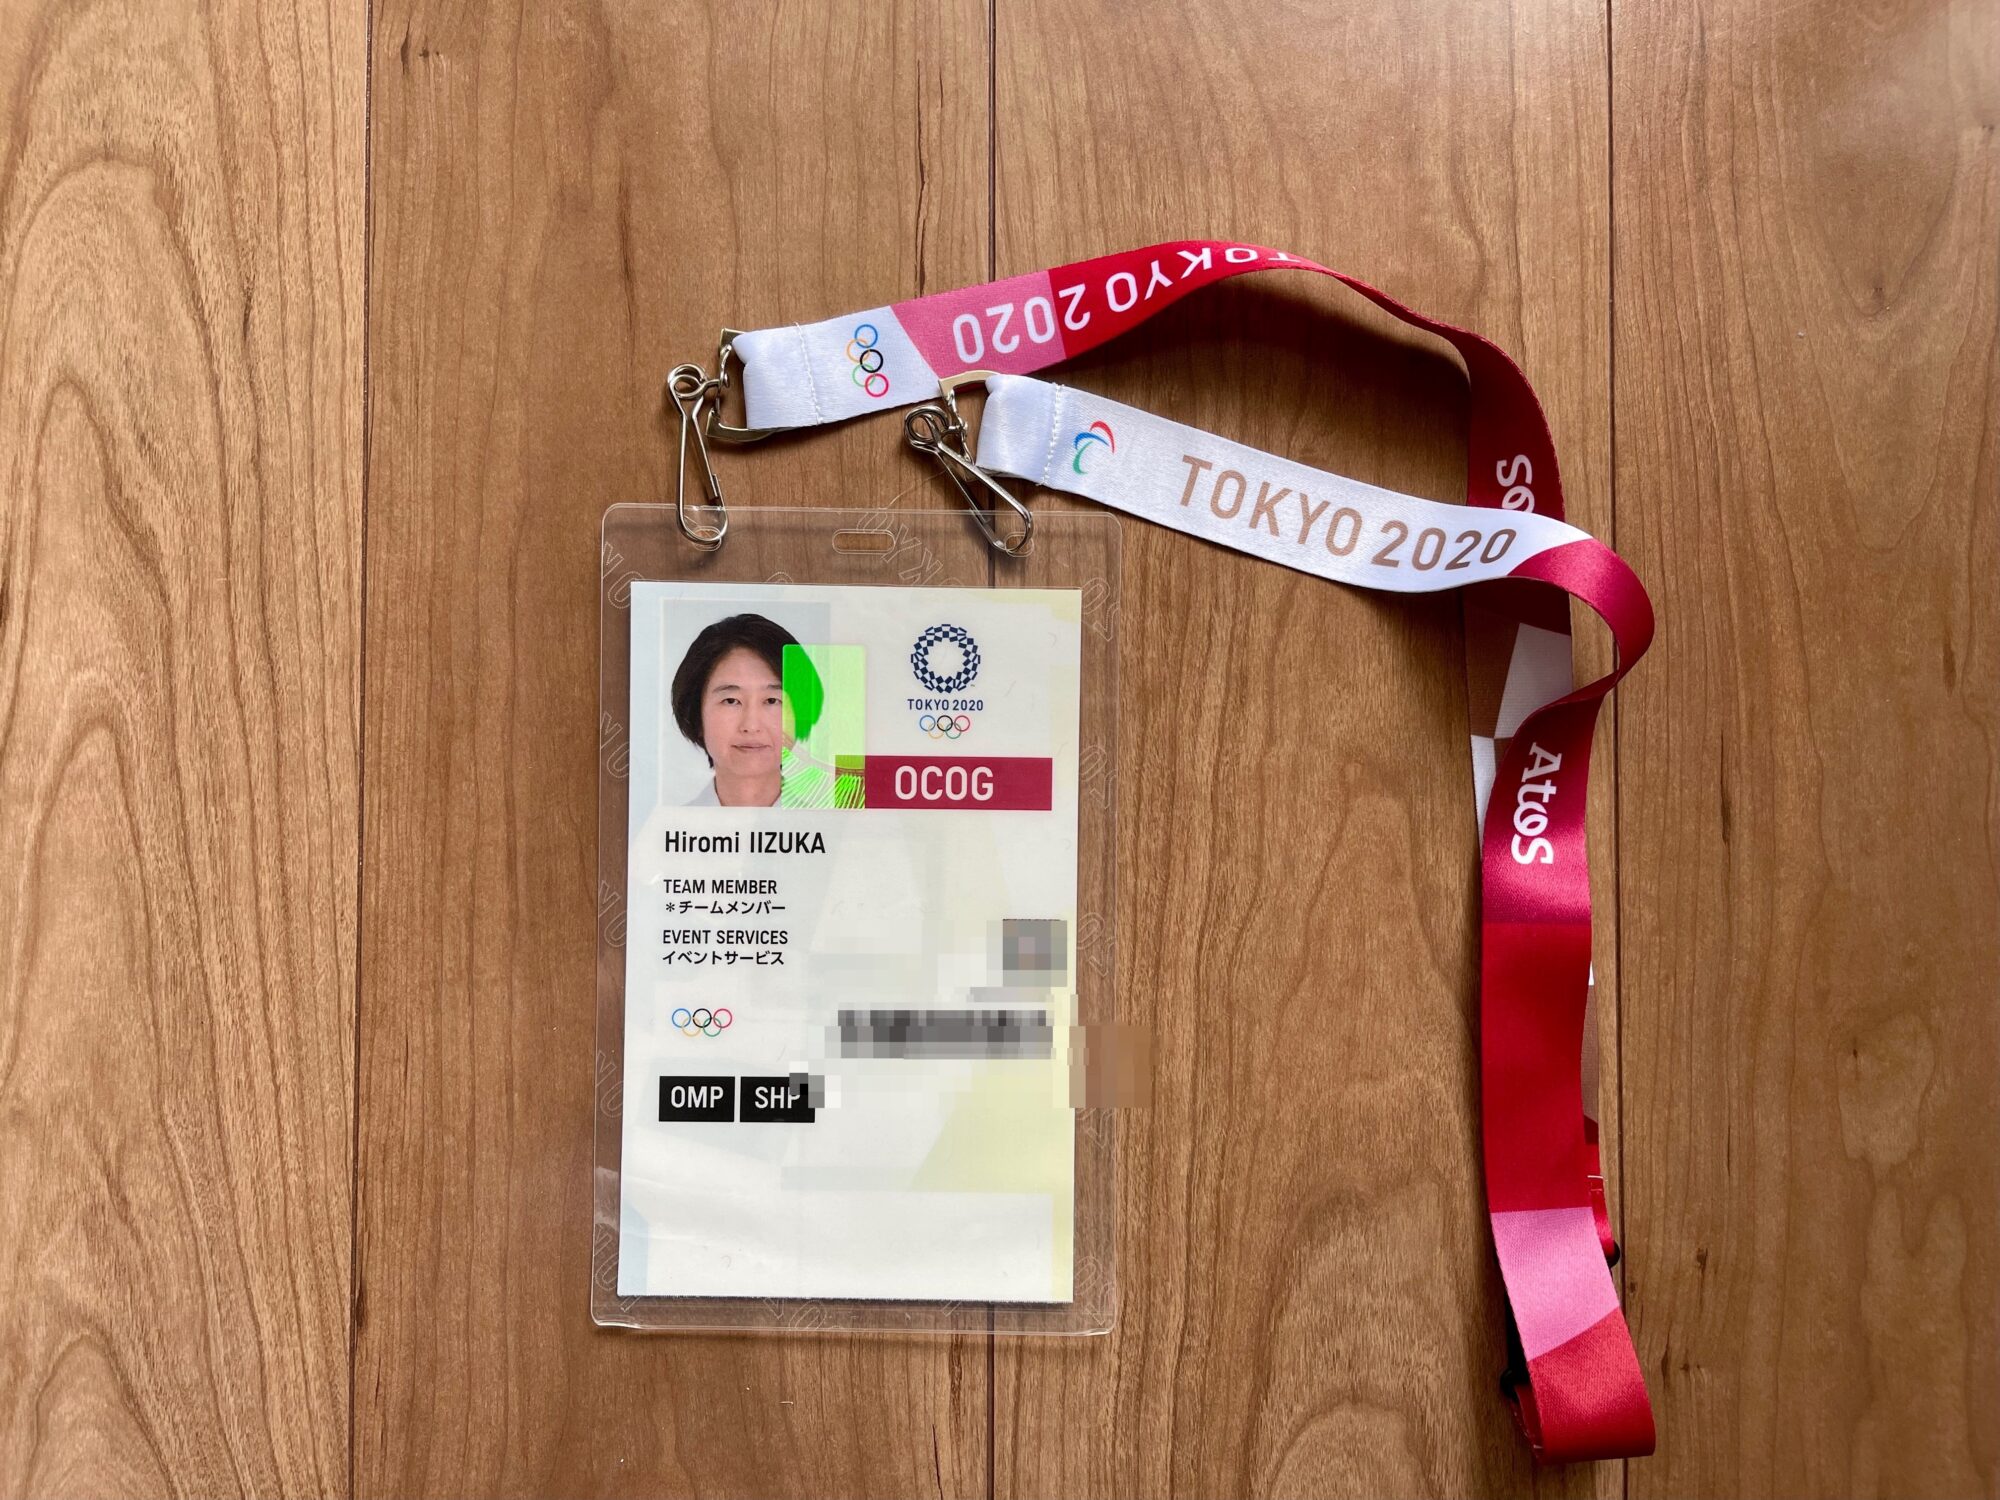 東京2020オリンピック ボランティアユニフォームを受け取りました | カエルとき